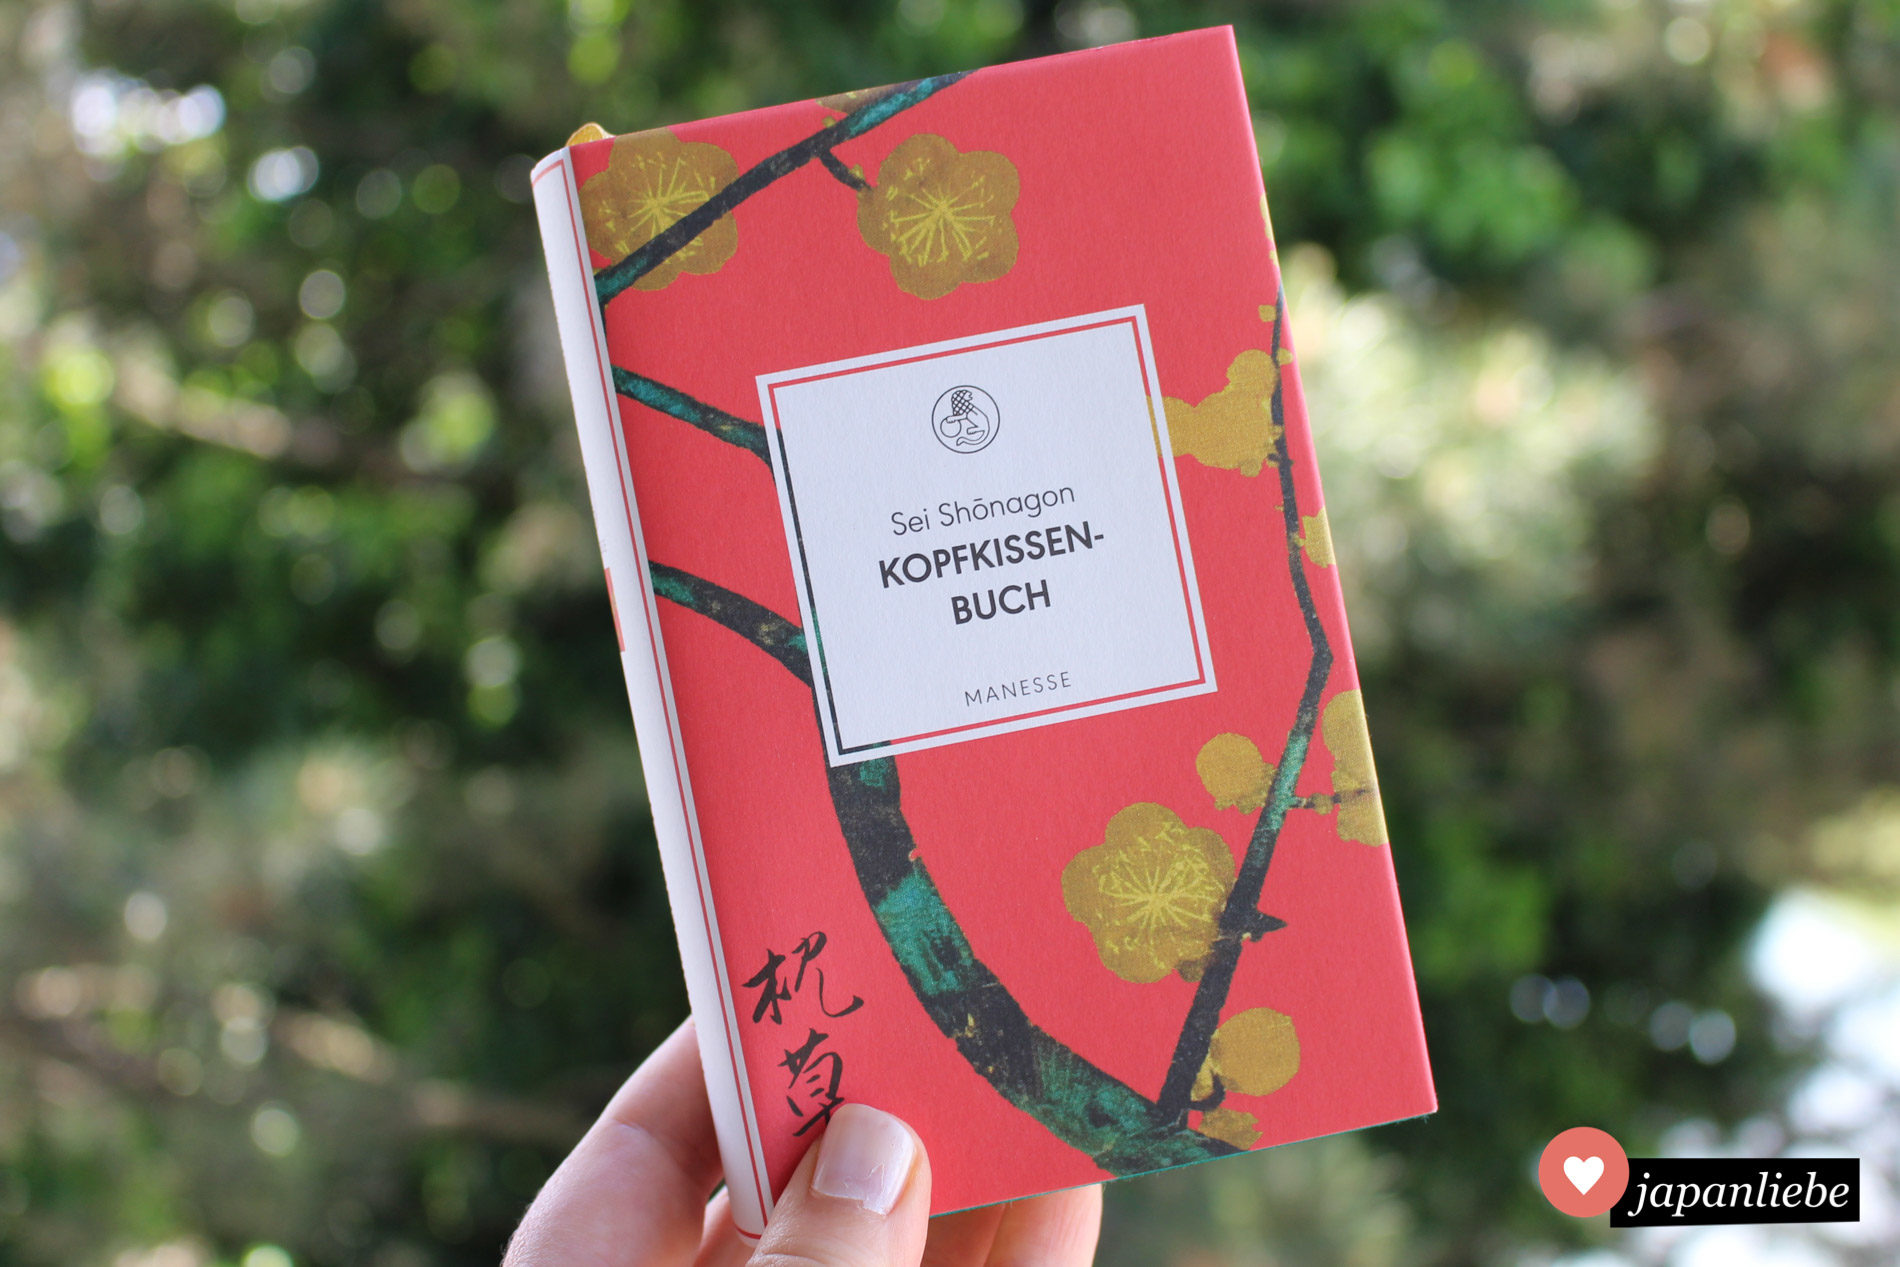 Ein Klassiker der japanischen und Weltliteratur: das "Kopfkissenbuch" vonHofdame Sei Shōnagon.